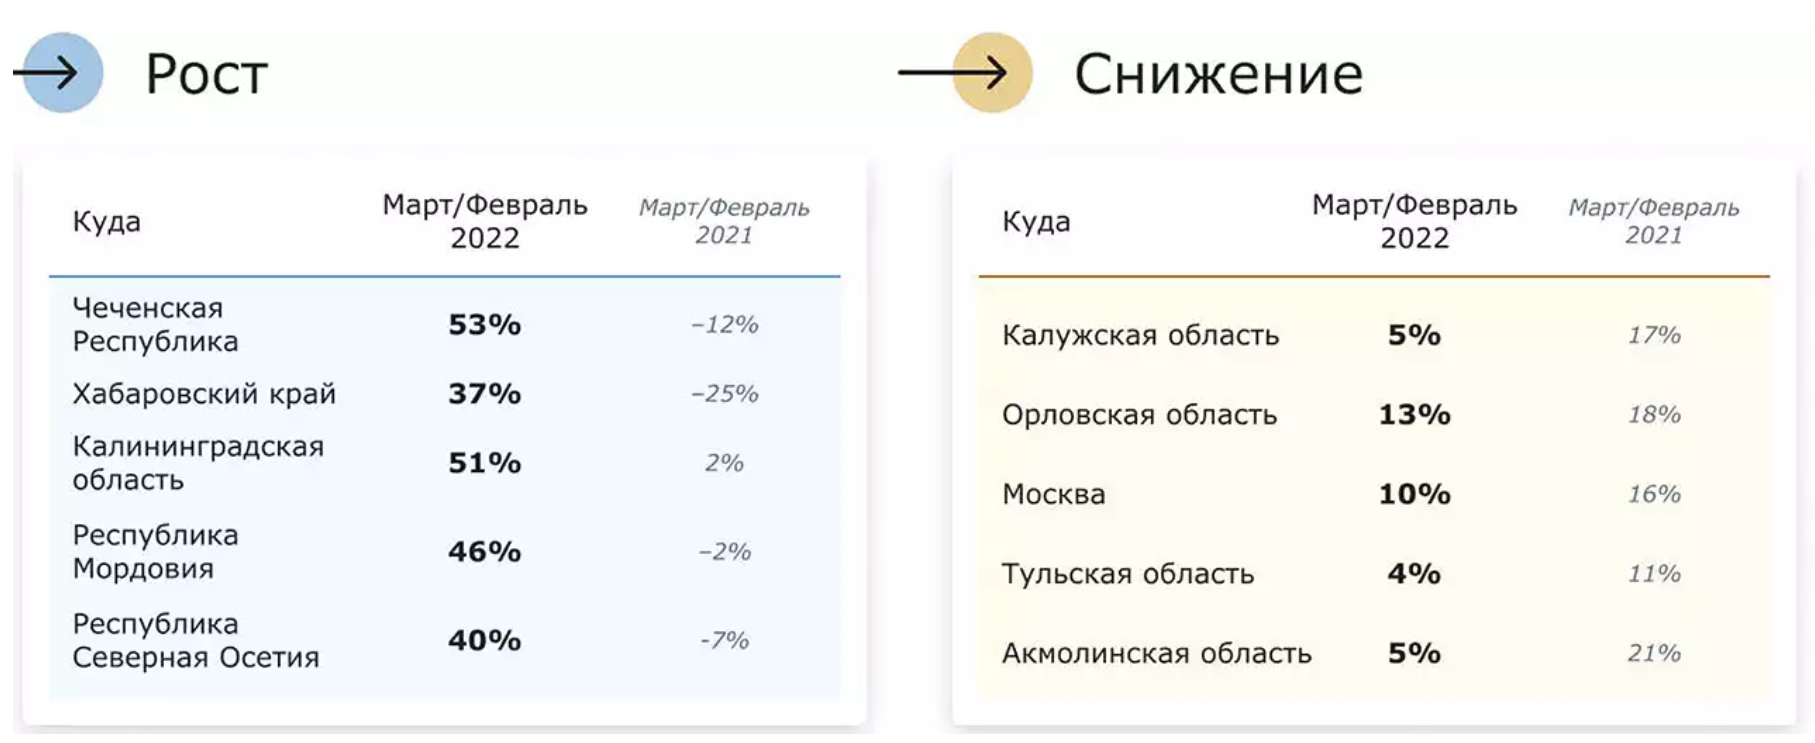 Размещение заявок в регионы РФ по данным ATI.SU